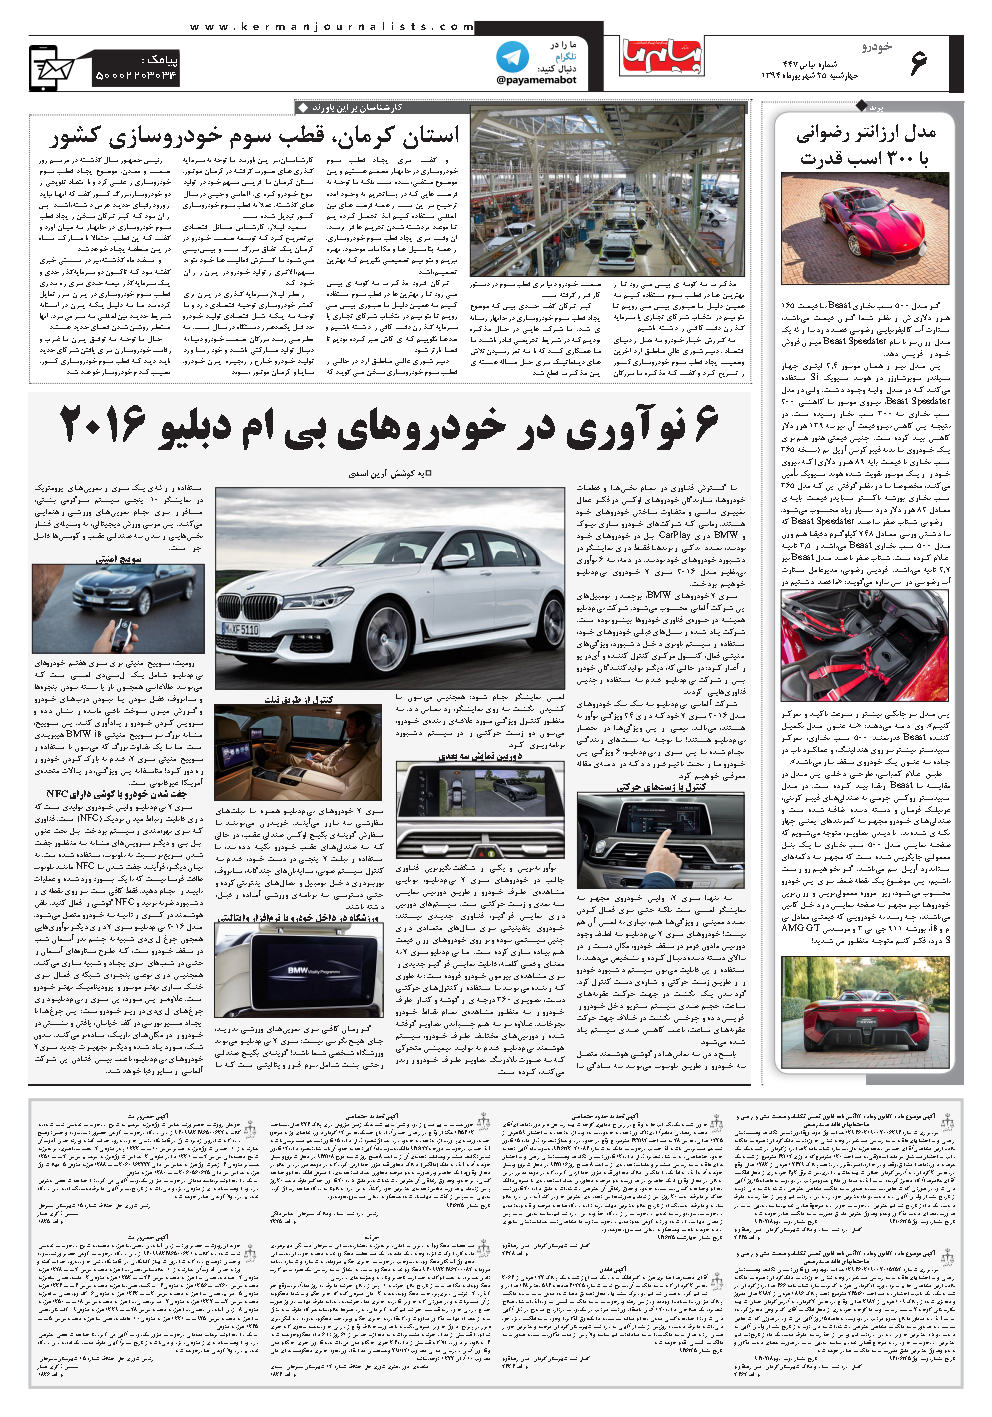 صفحه خودرو شماره شماره ۴۴۷ روزنامه پیام ما